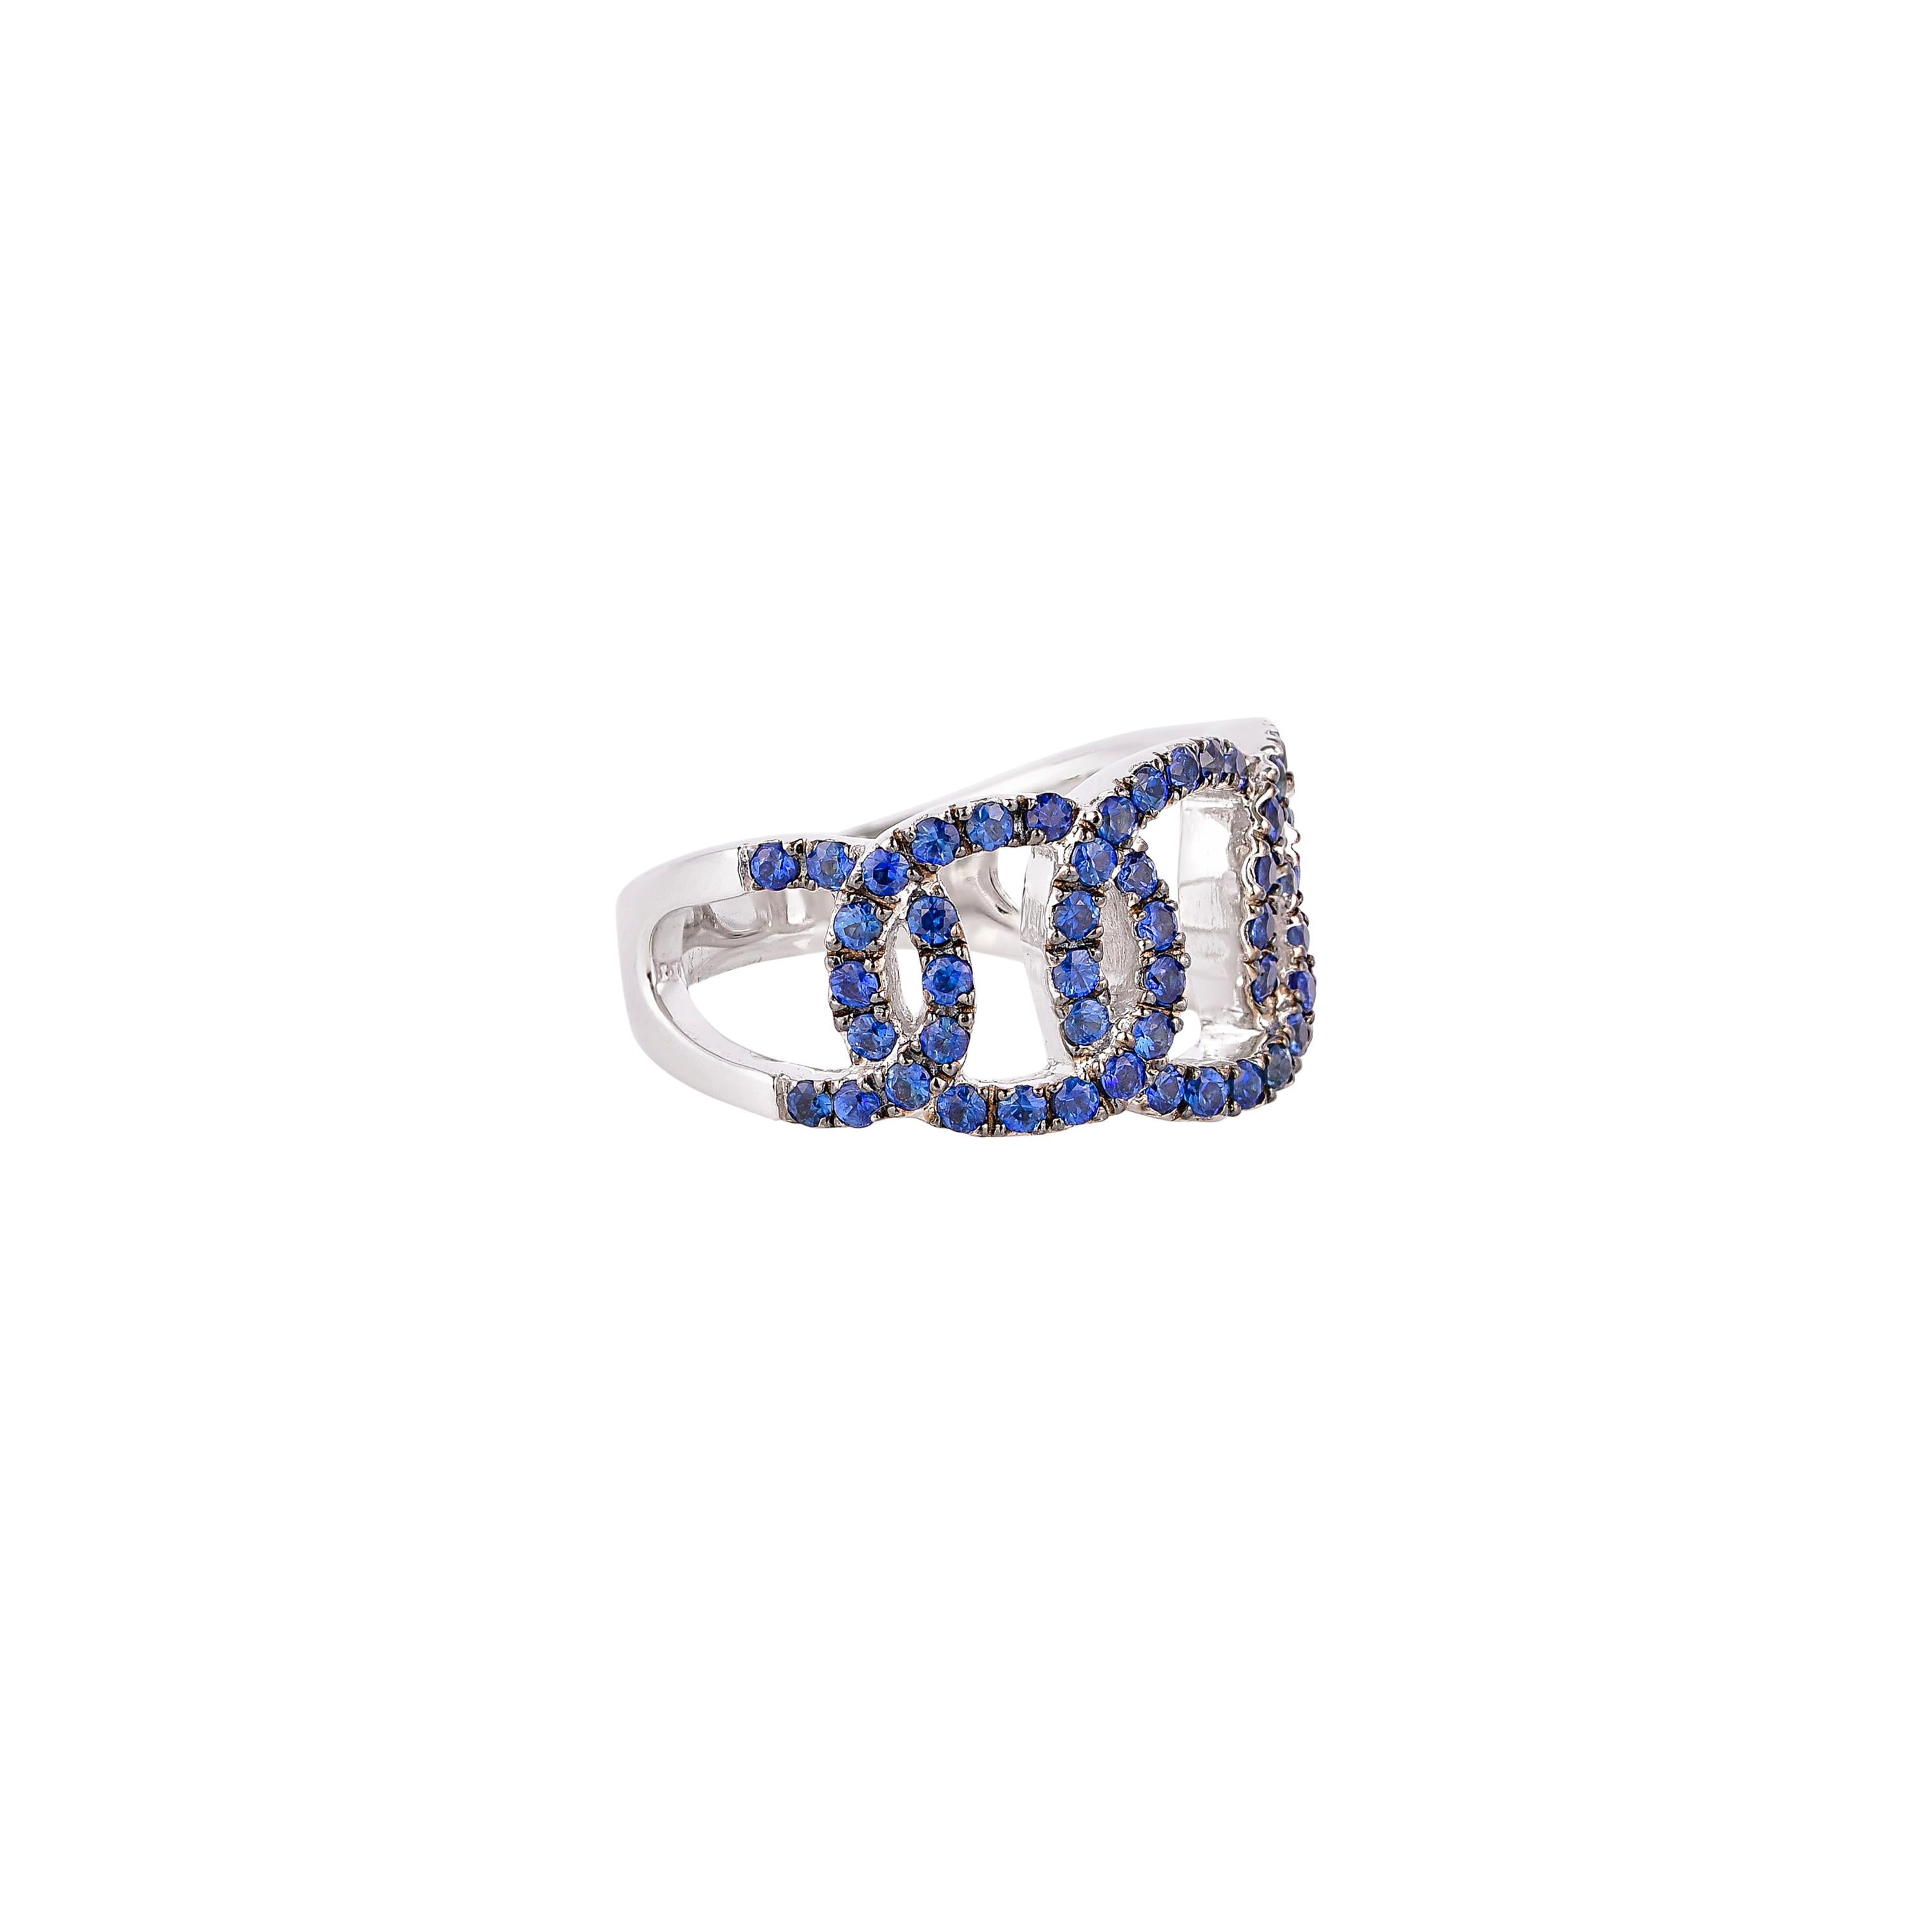 Einzigartige und Designer-Cocktailringe von Sunita Nahata Fine Design.

Klassischer Ring mit blauem Saphir aus 14 Karat Weißgold. 

Blauer Saphir: 1,20 Karat, 1,50 mm groß, runde Form.

Gold: 7,70 g, 14K Weißgold. 
Ring Größe: US 6.75 - Die Größe